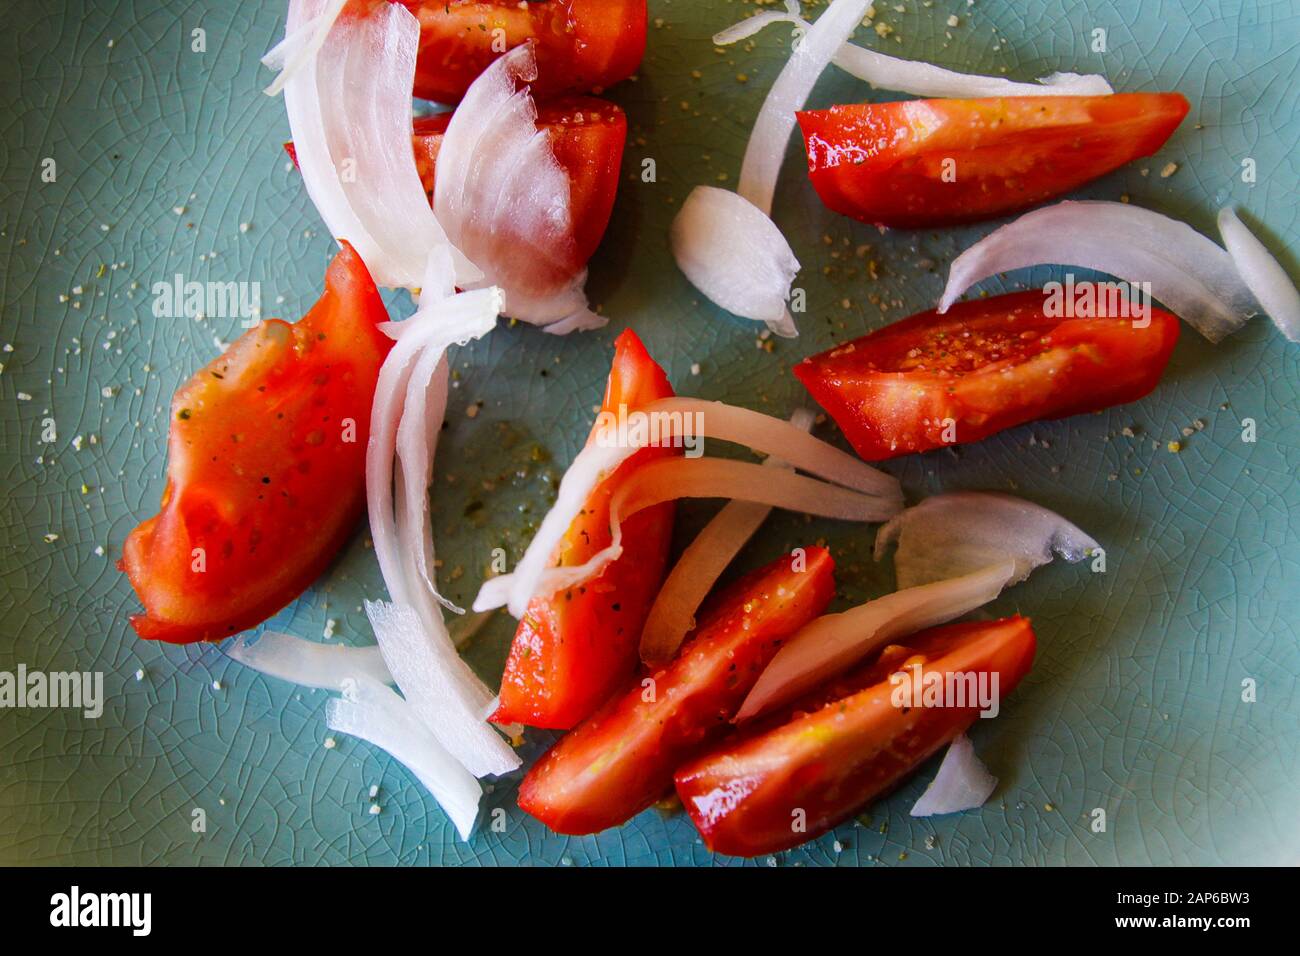 Vista dall'alto ad angolo alto vicino a fette rosse fresche di pomodori crudi con cipolle condite con sale alle erbe su piastra verde Foto Stock